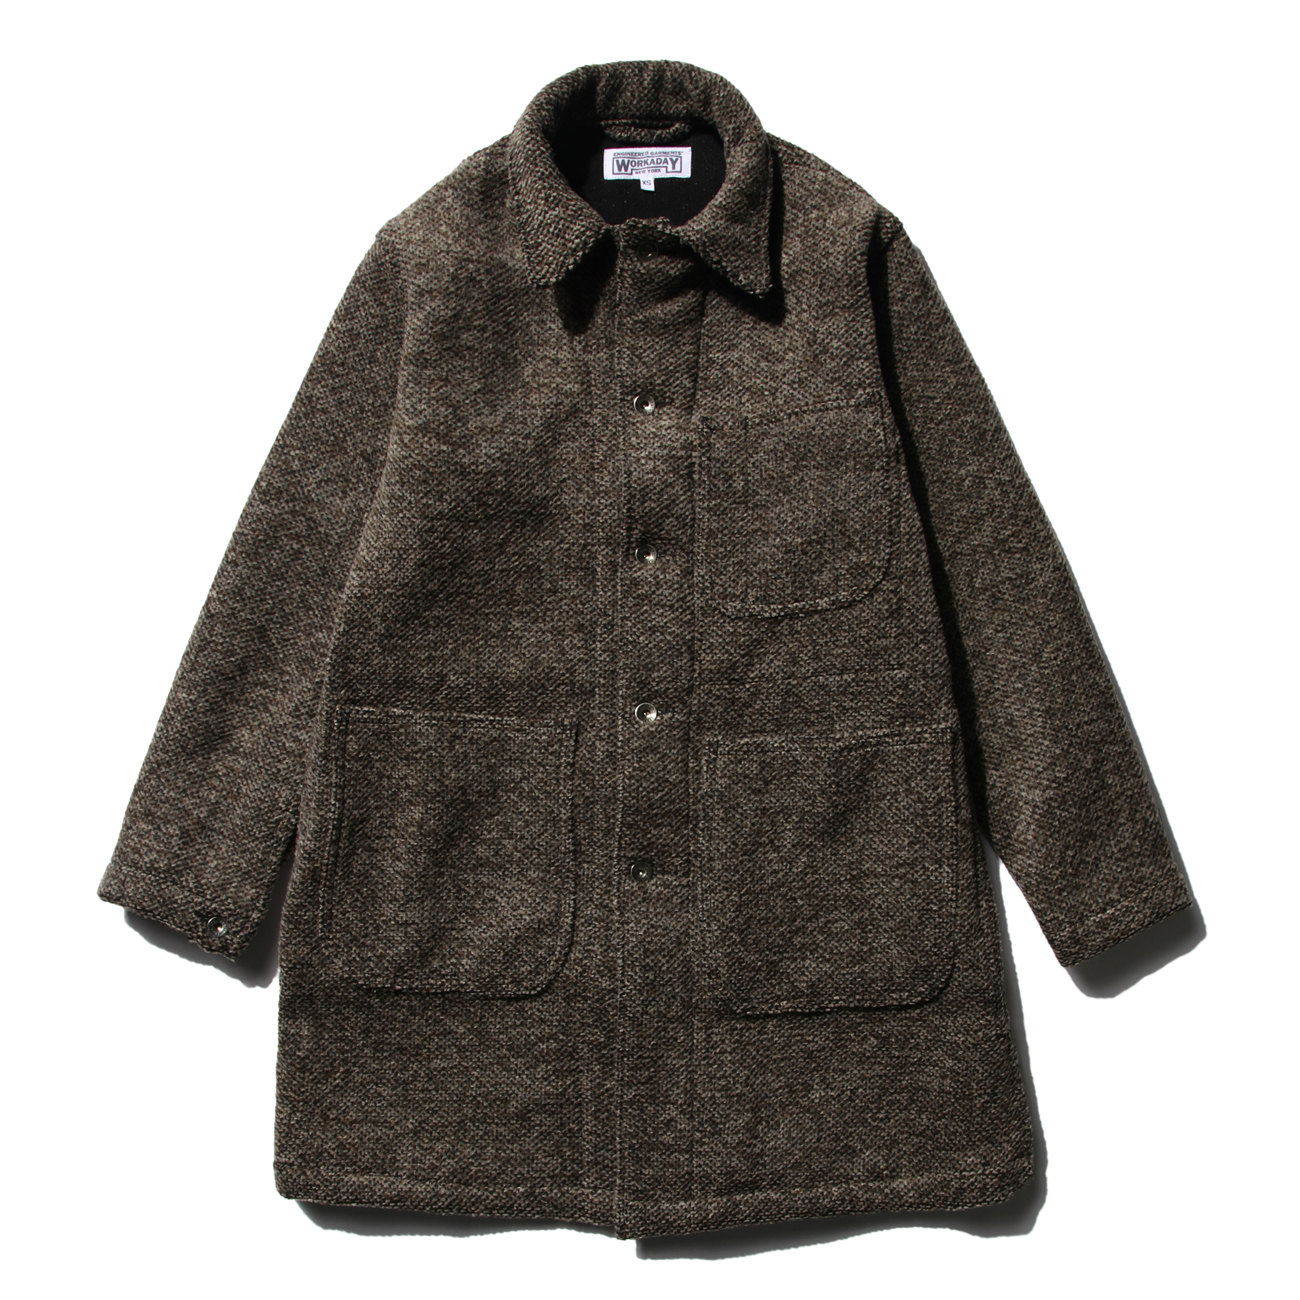 EG Workaday Shop Coat - Tri Blend Wool Tweed - Brown